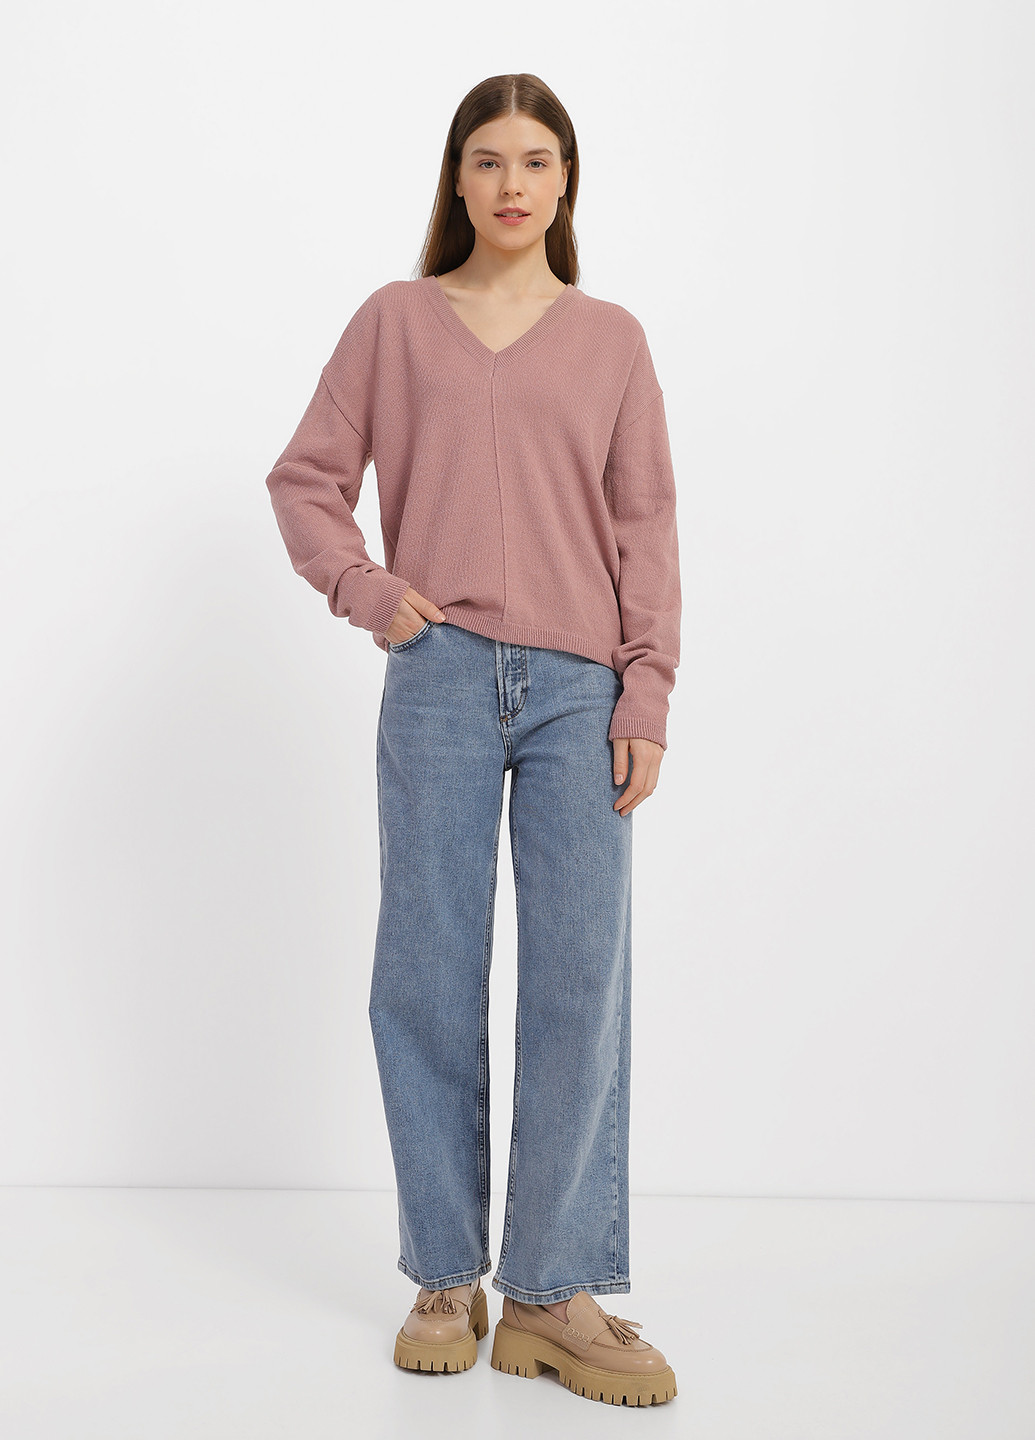 Розово-коричневый демисезонный пуловер пуловер Sewel